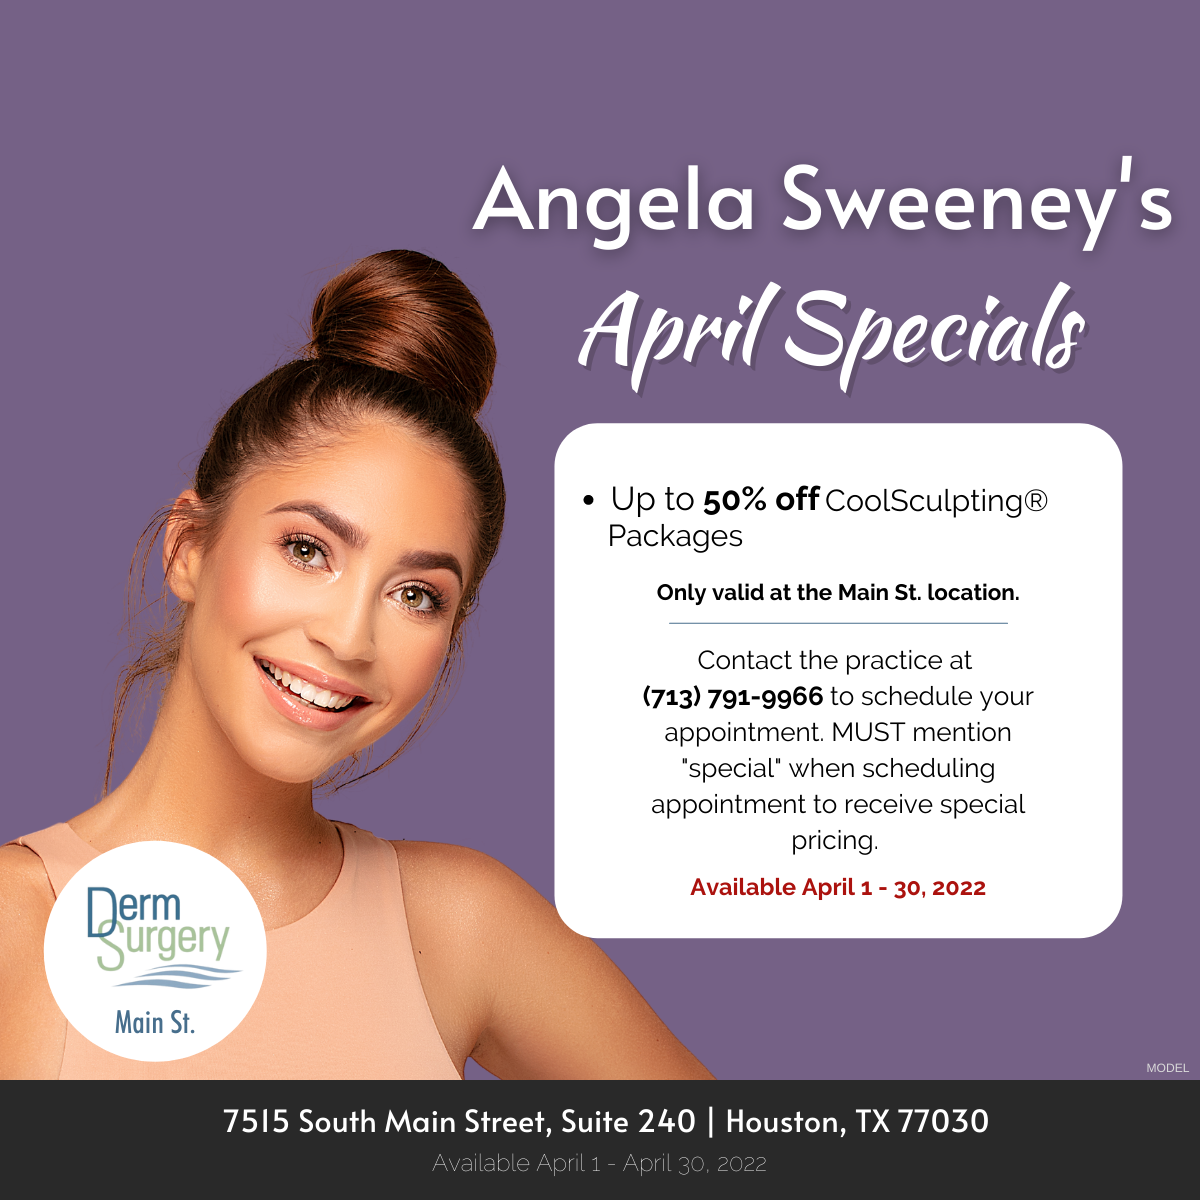 Angela Sweeney's April Specials